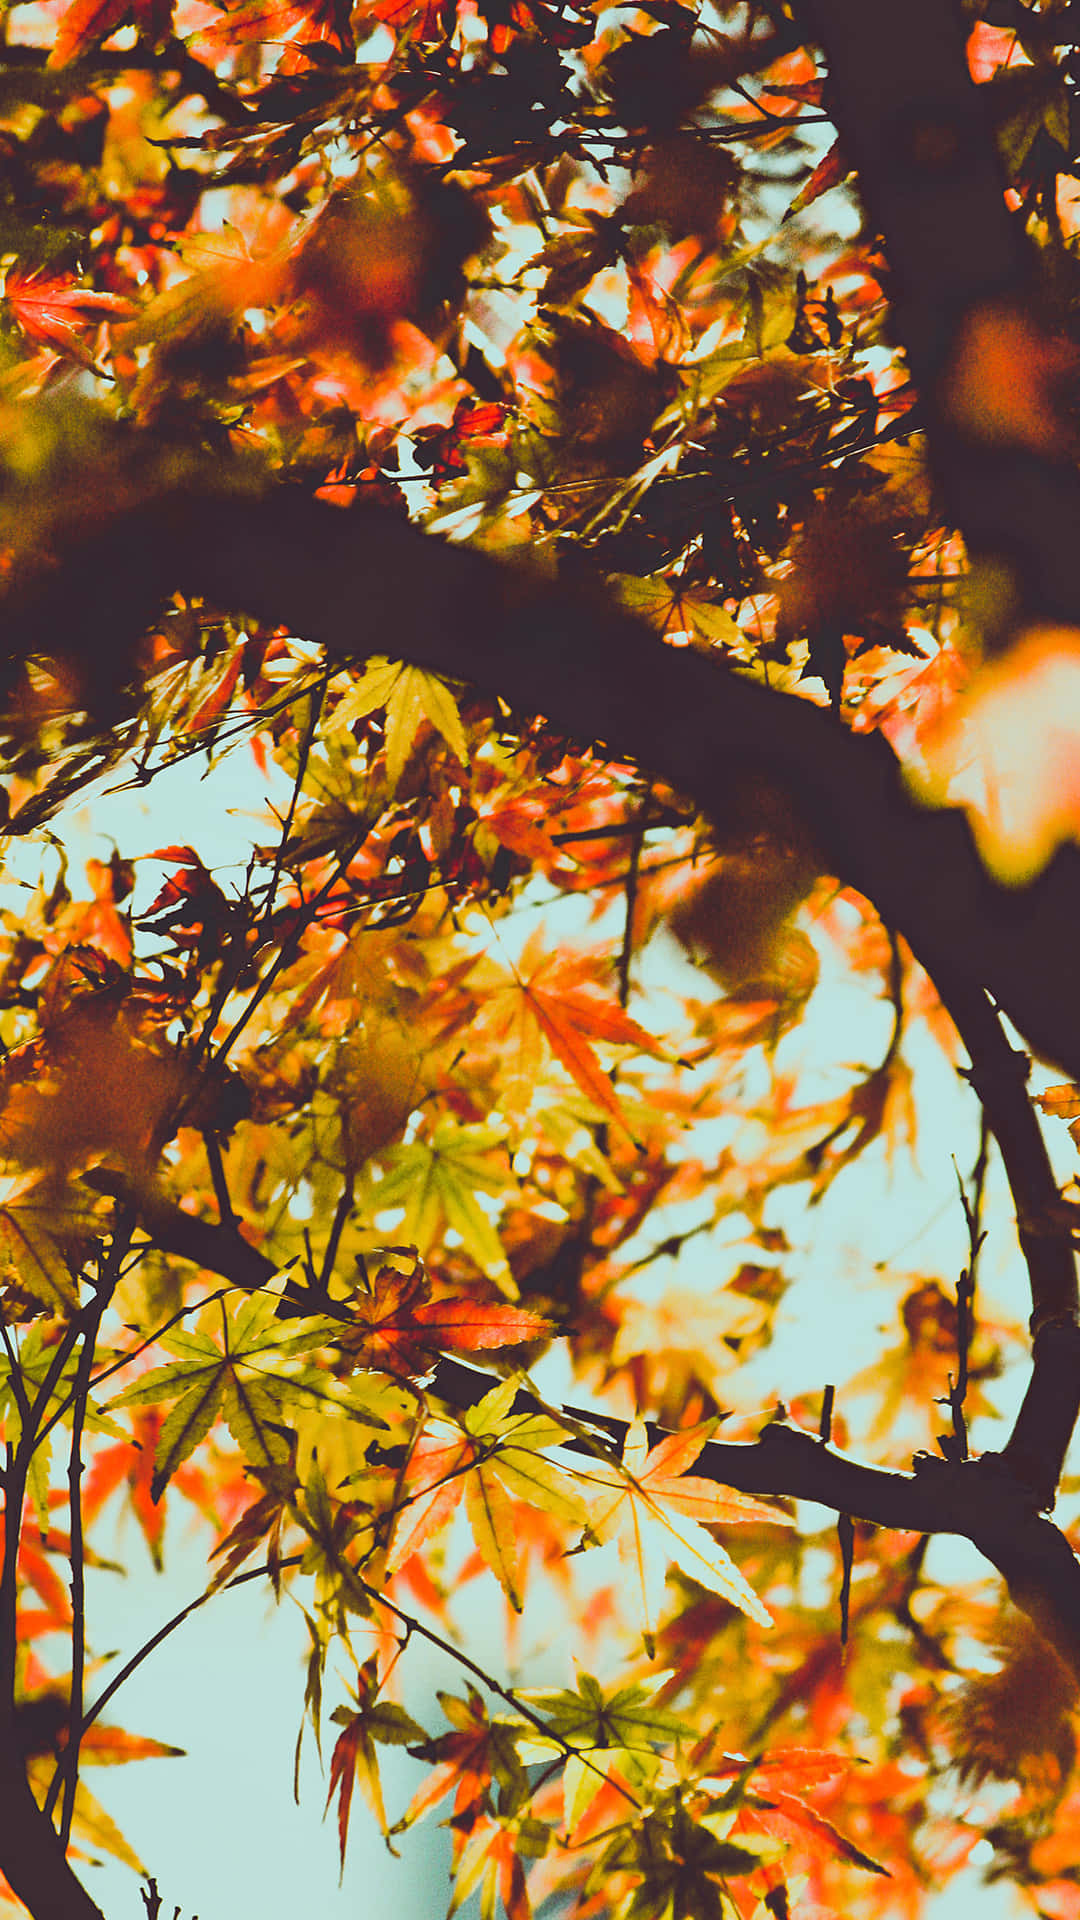 Freuedich Über Die Pracht Des Herbstes Mit Dem Iphone 6 Plus Wallpaper